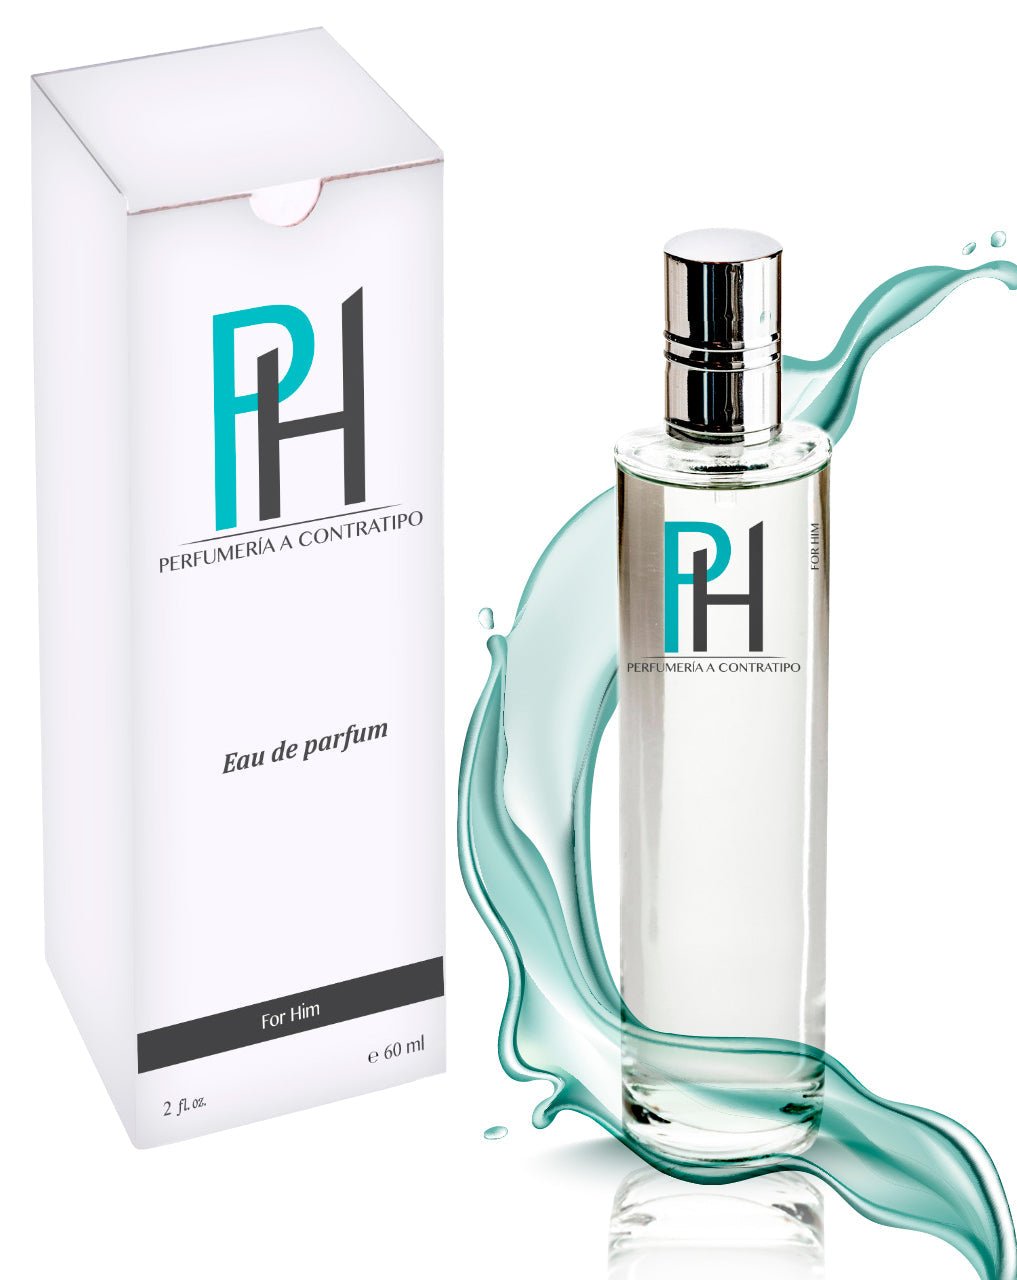 Perfume Obsesion men de 60 ml - PH Perfumería a Contratipo